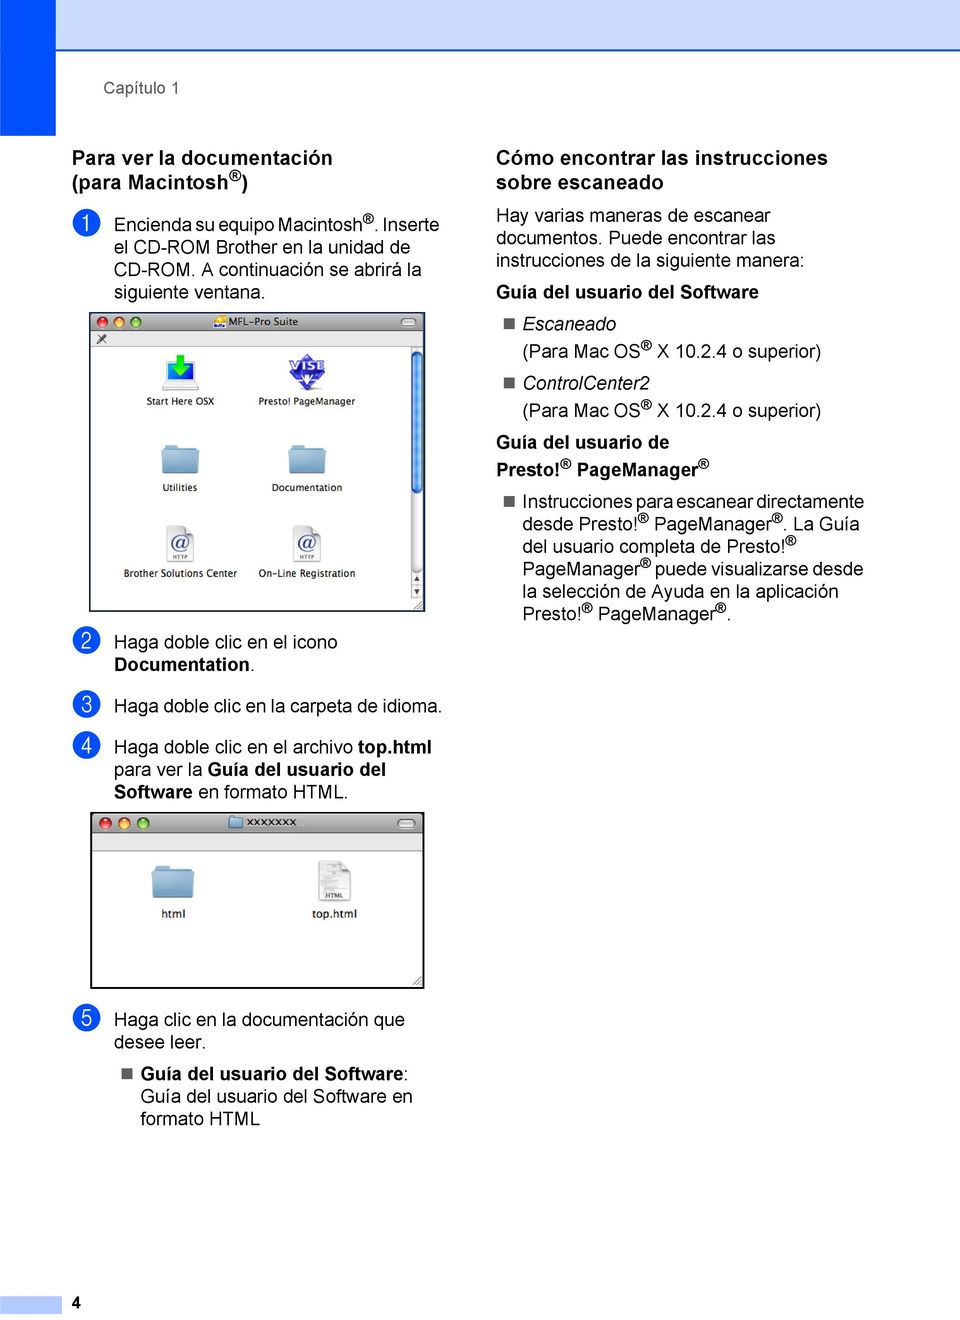 Puede encontrar las instrucciones de la siguiente manera: Guía del usuario del Software Escaneado (Para Mac OS X 10.2.4 o superior) ControlCenter2 (Para Mac OS X 10.2.4 o superior) Guía del usuario de Presto!